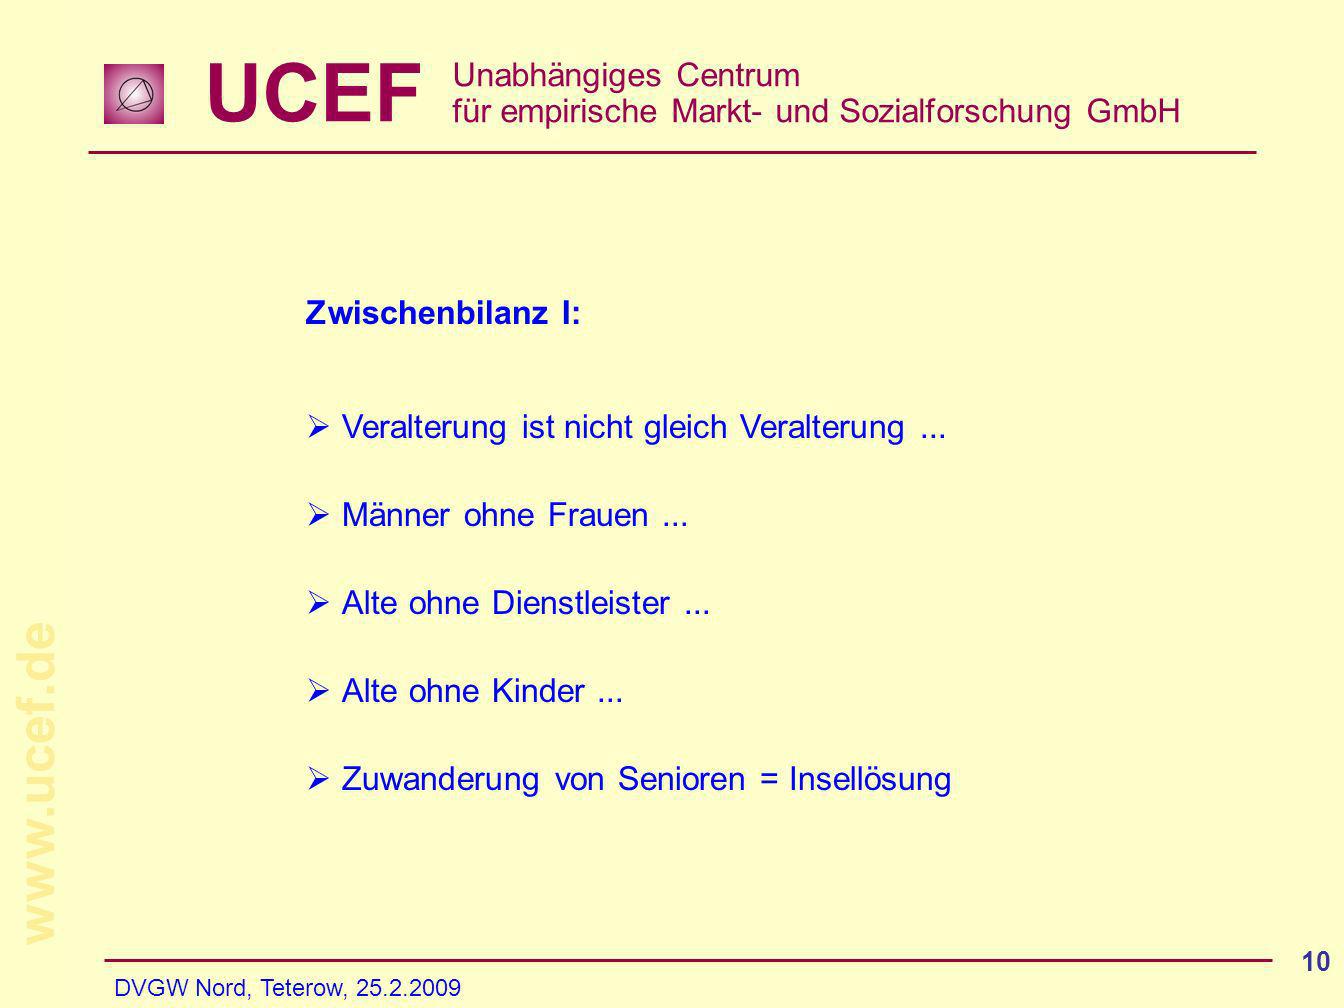 UCEF Unabhängiges Centrum für empirische Markt- und Sozialforschung GmbH   DVGW Nord, Teterow, Zwischenbilanz I: Veralterung ist nicht gleich Veralterung...